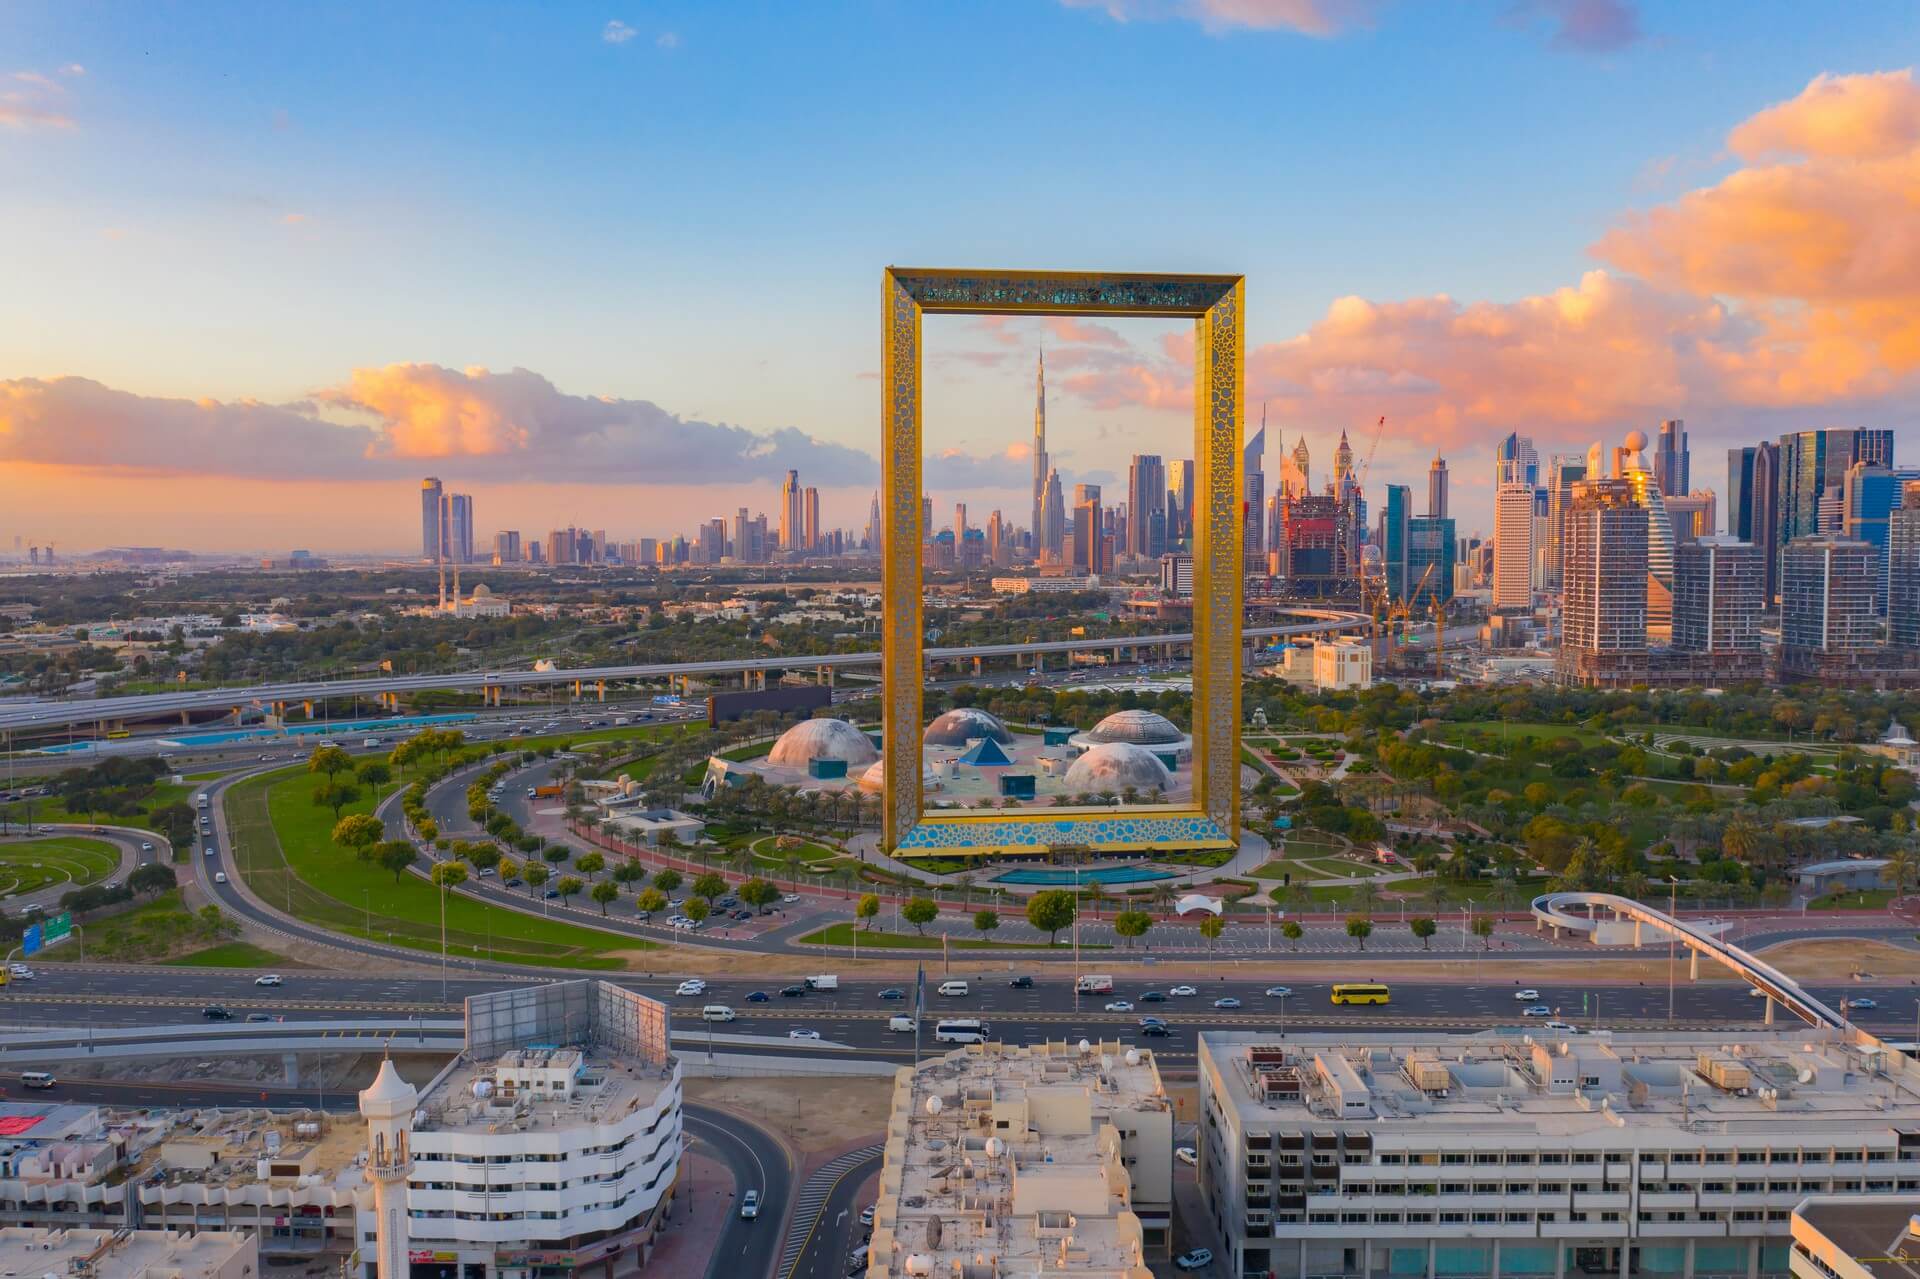 Vista aerea di Dubai Frame, Downtown skyline, Emirati Arabi Uniti o UAE. Quartiere finanziario e area commerciale nella città urbana intelligente. Grattacielo e grattacieli al tramonto.
